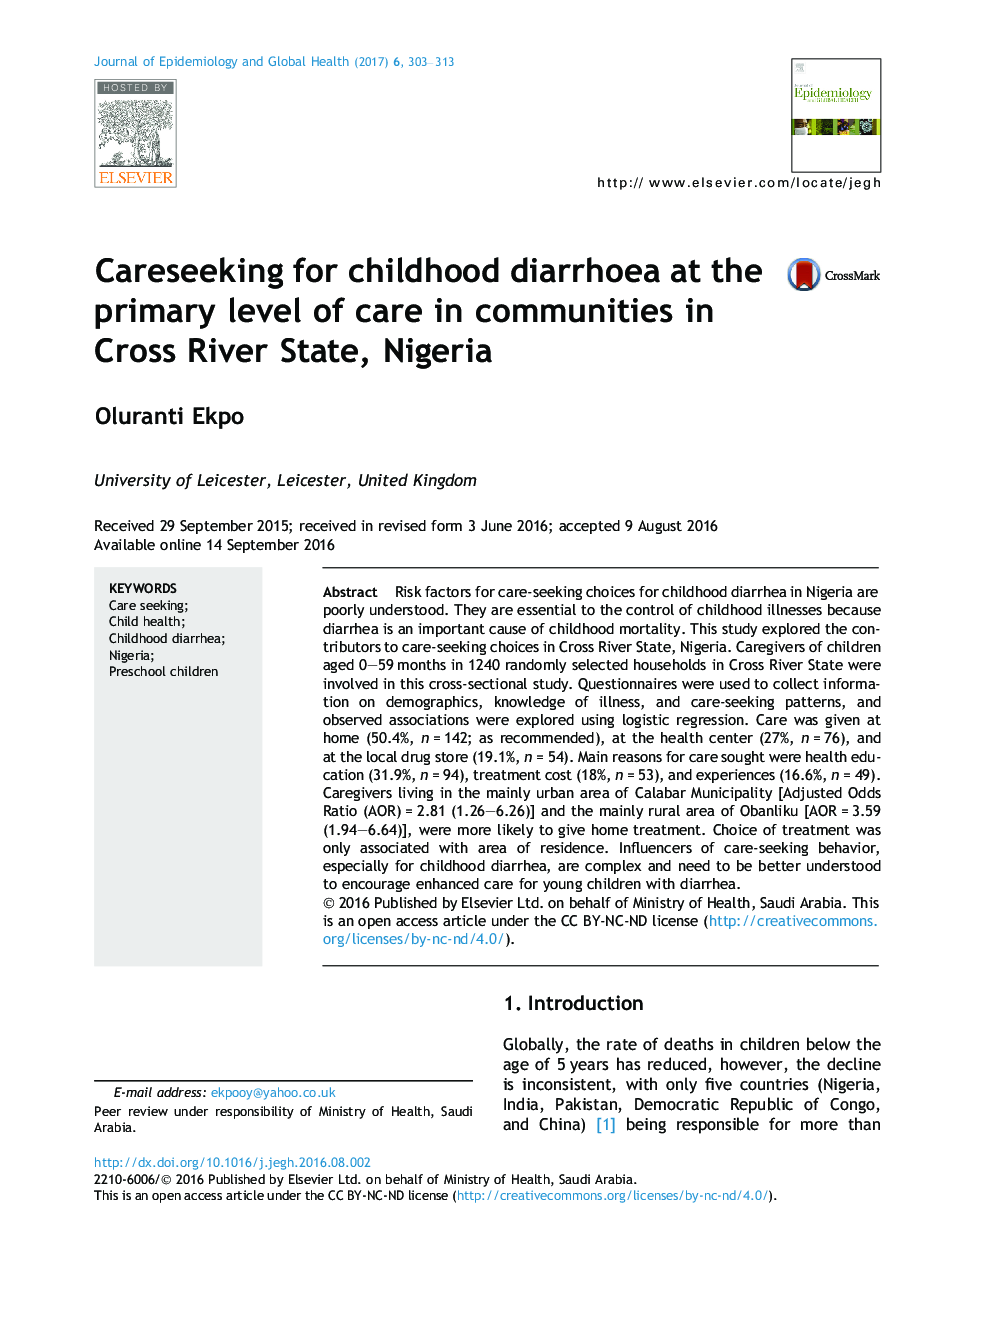 مراقبت از اسهال دوران کودکی در سطح مراقبت اولیه در جوامع در ایالت کراس رود، نیجریه 